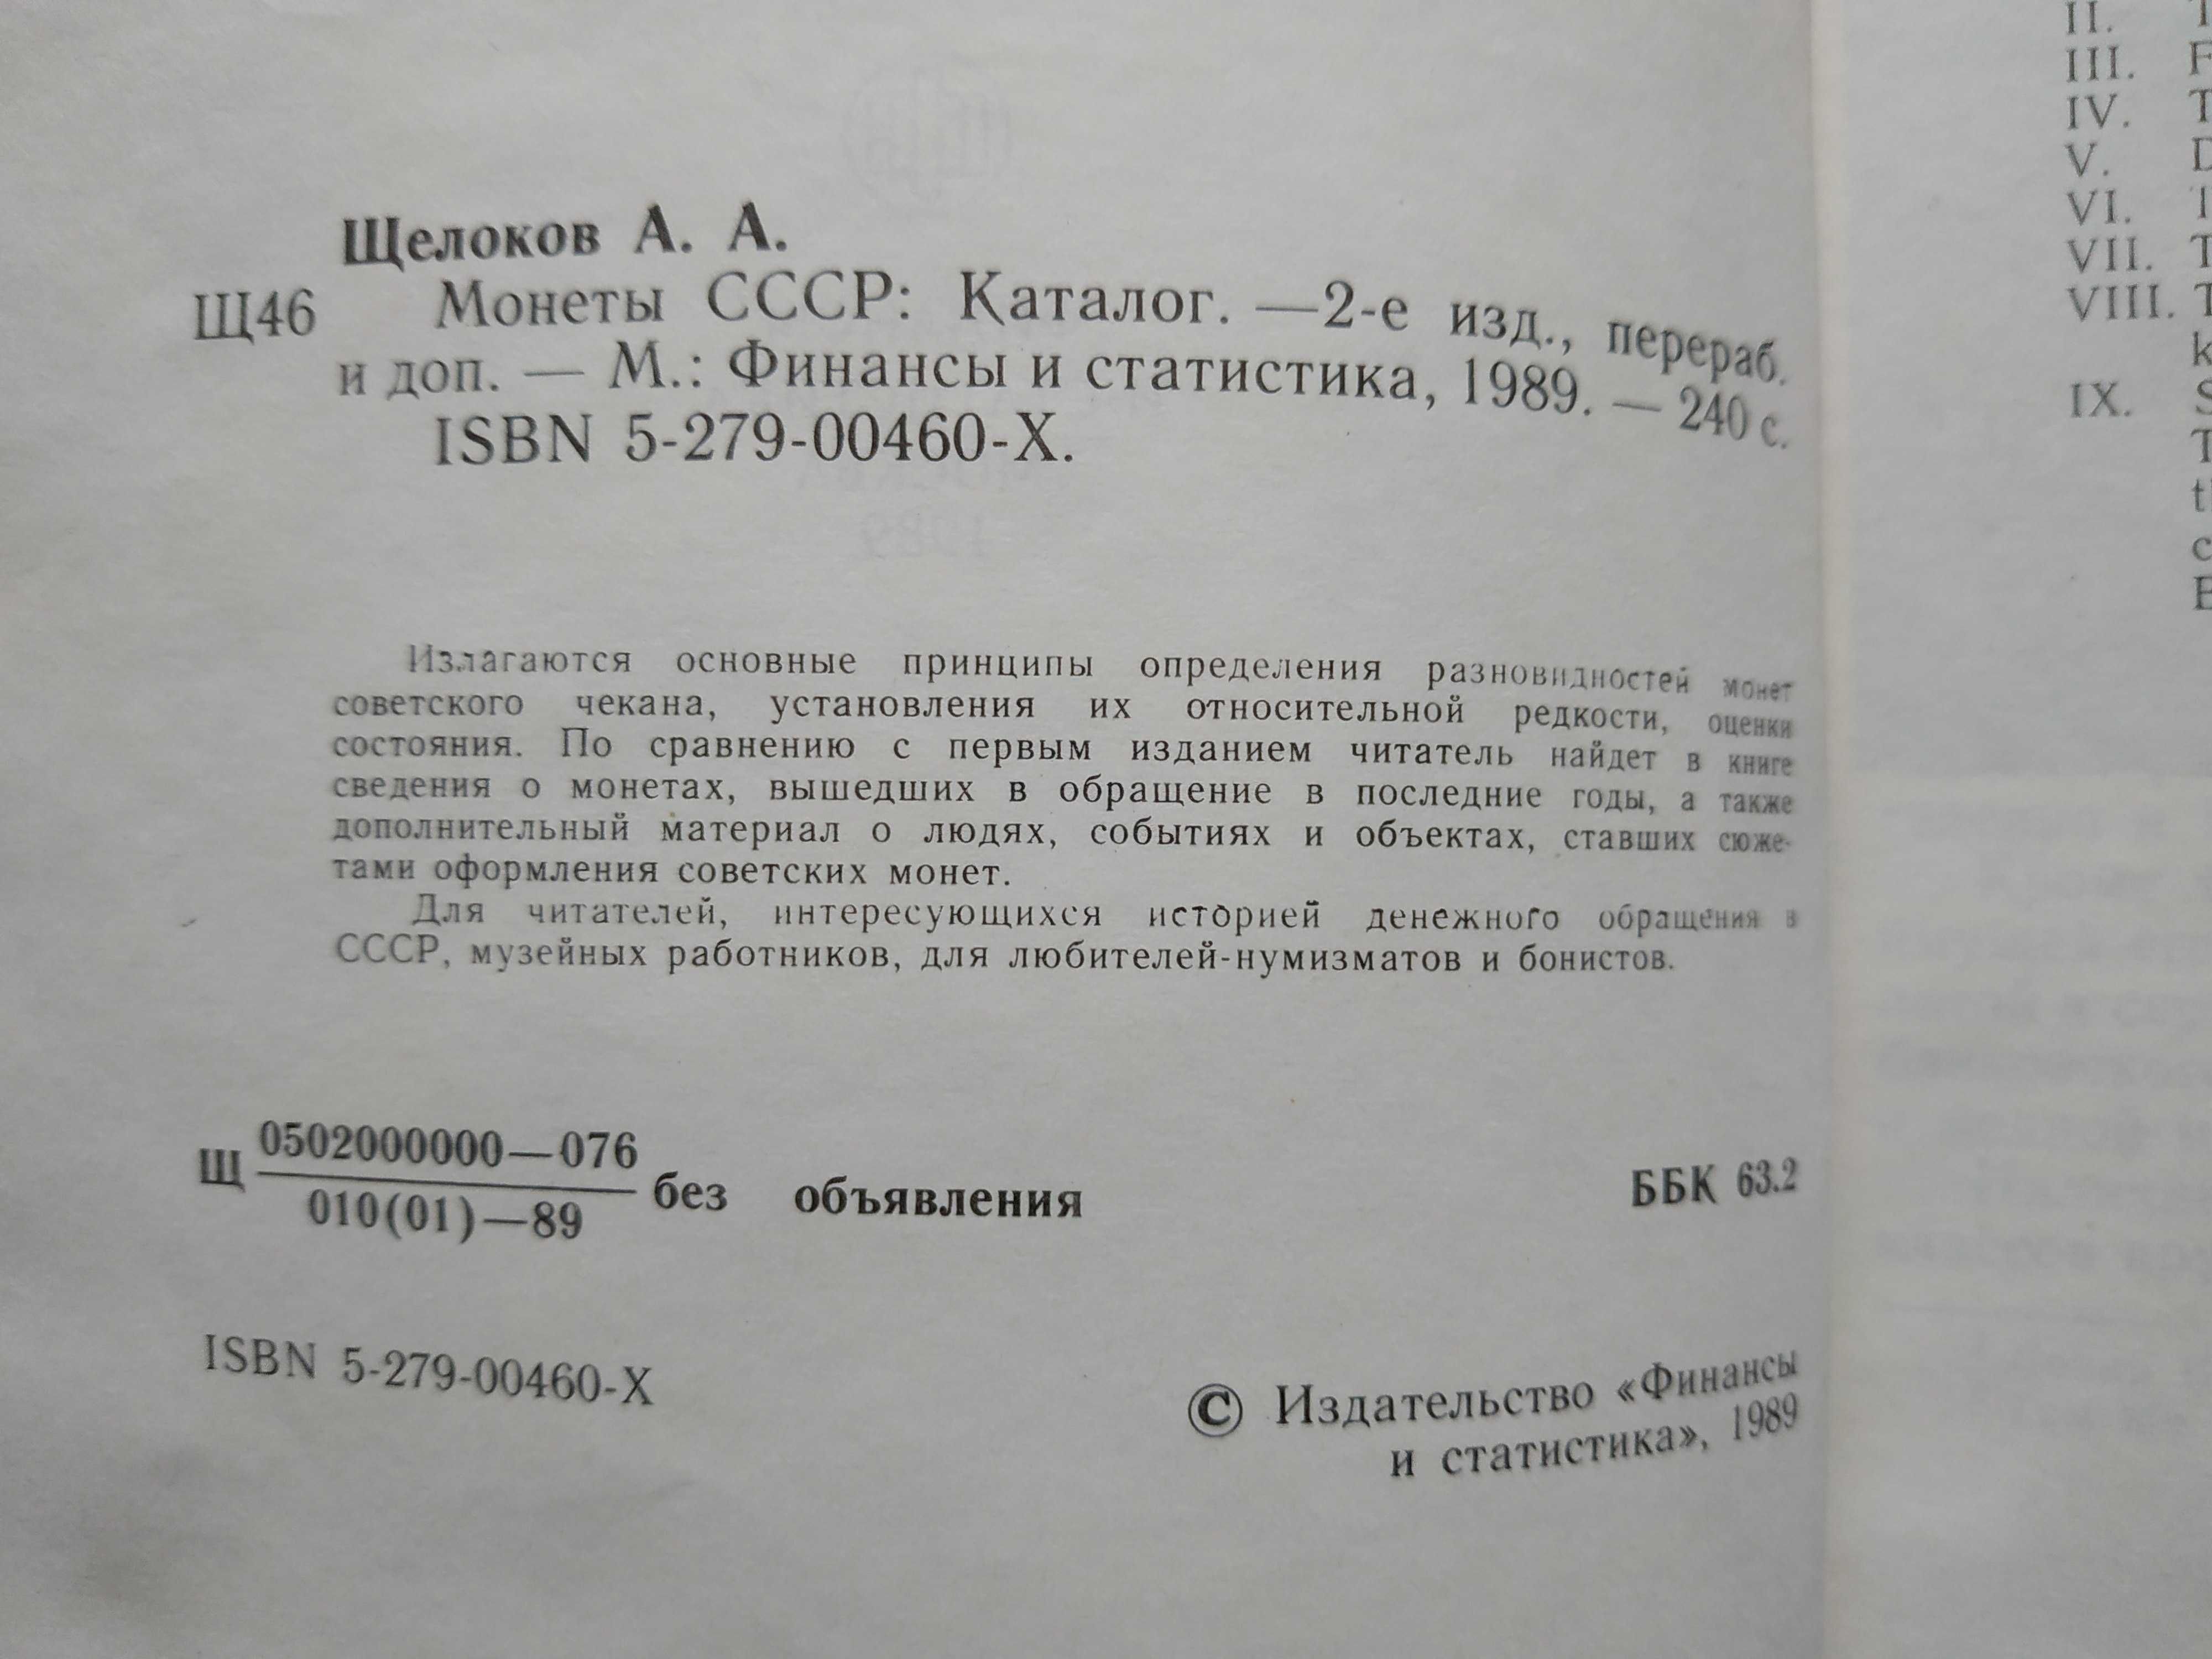 Книга. А. ЩЕЛОКОВ "МОНЕТЫ СССР". 1989 Г.